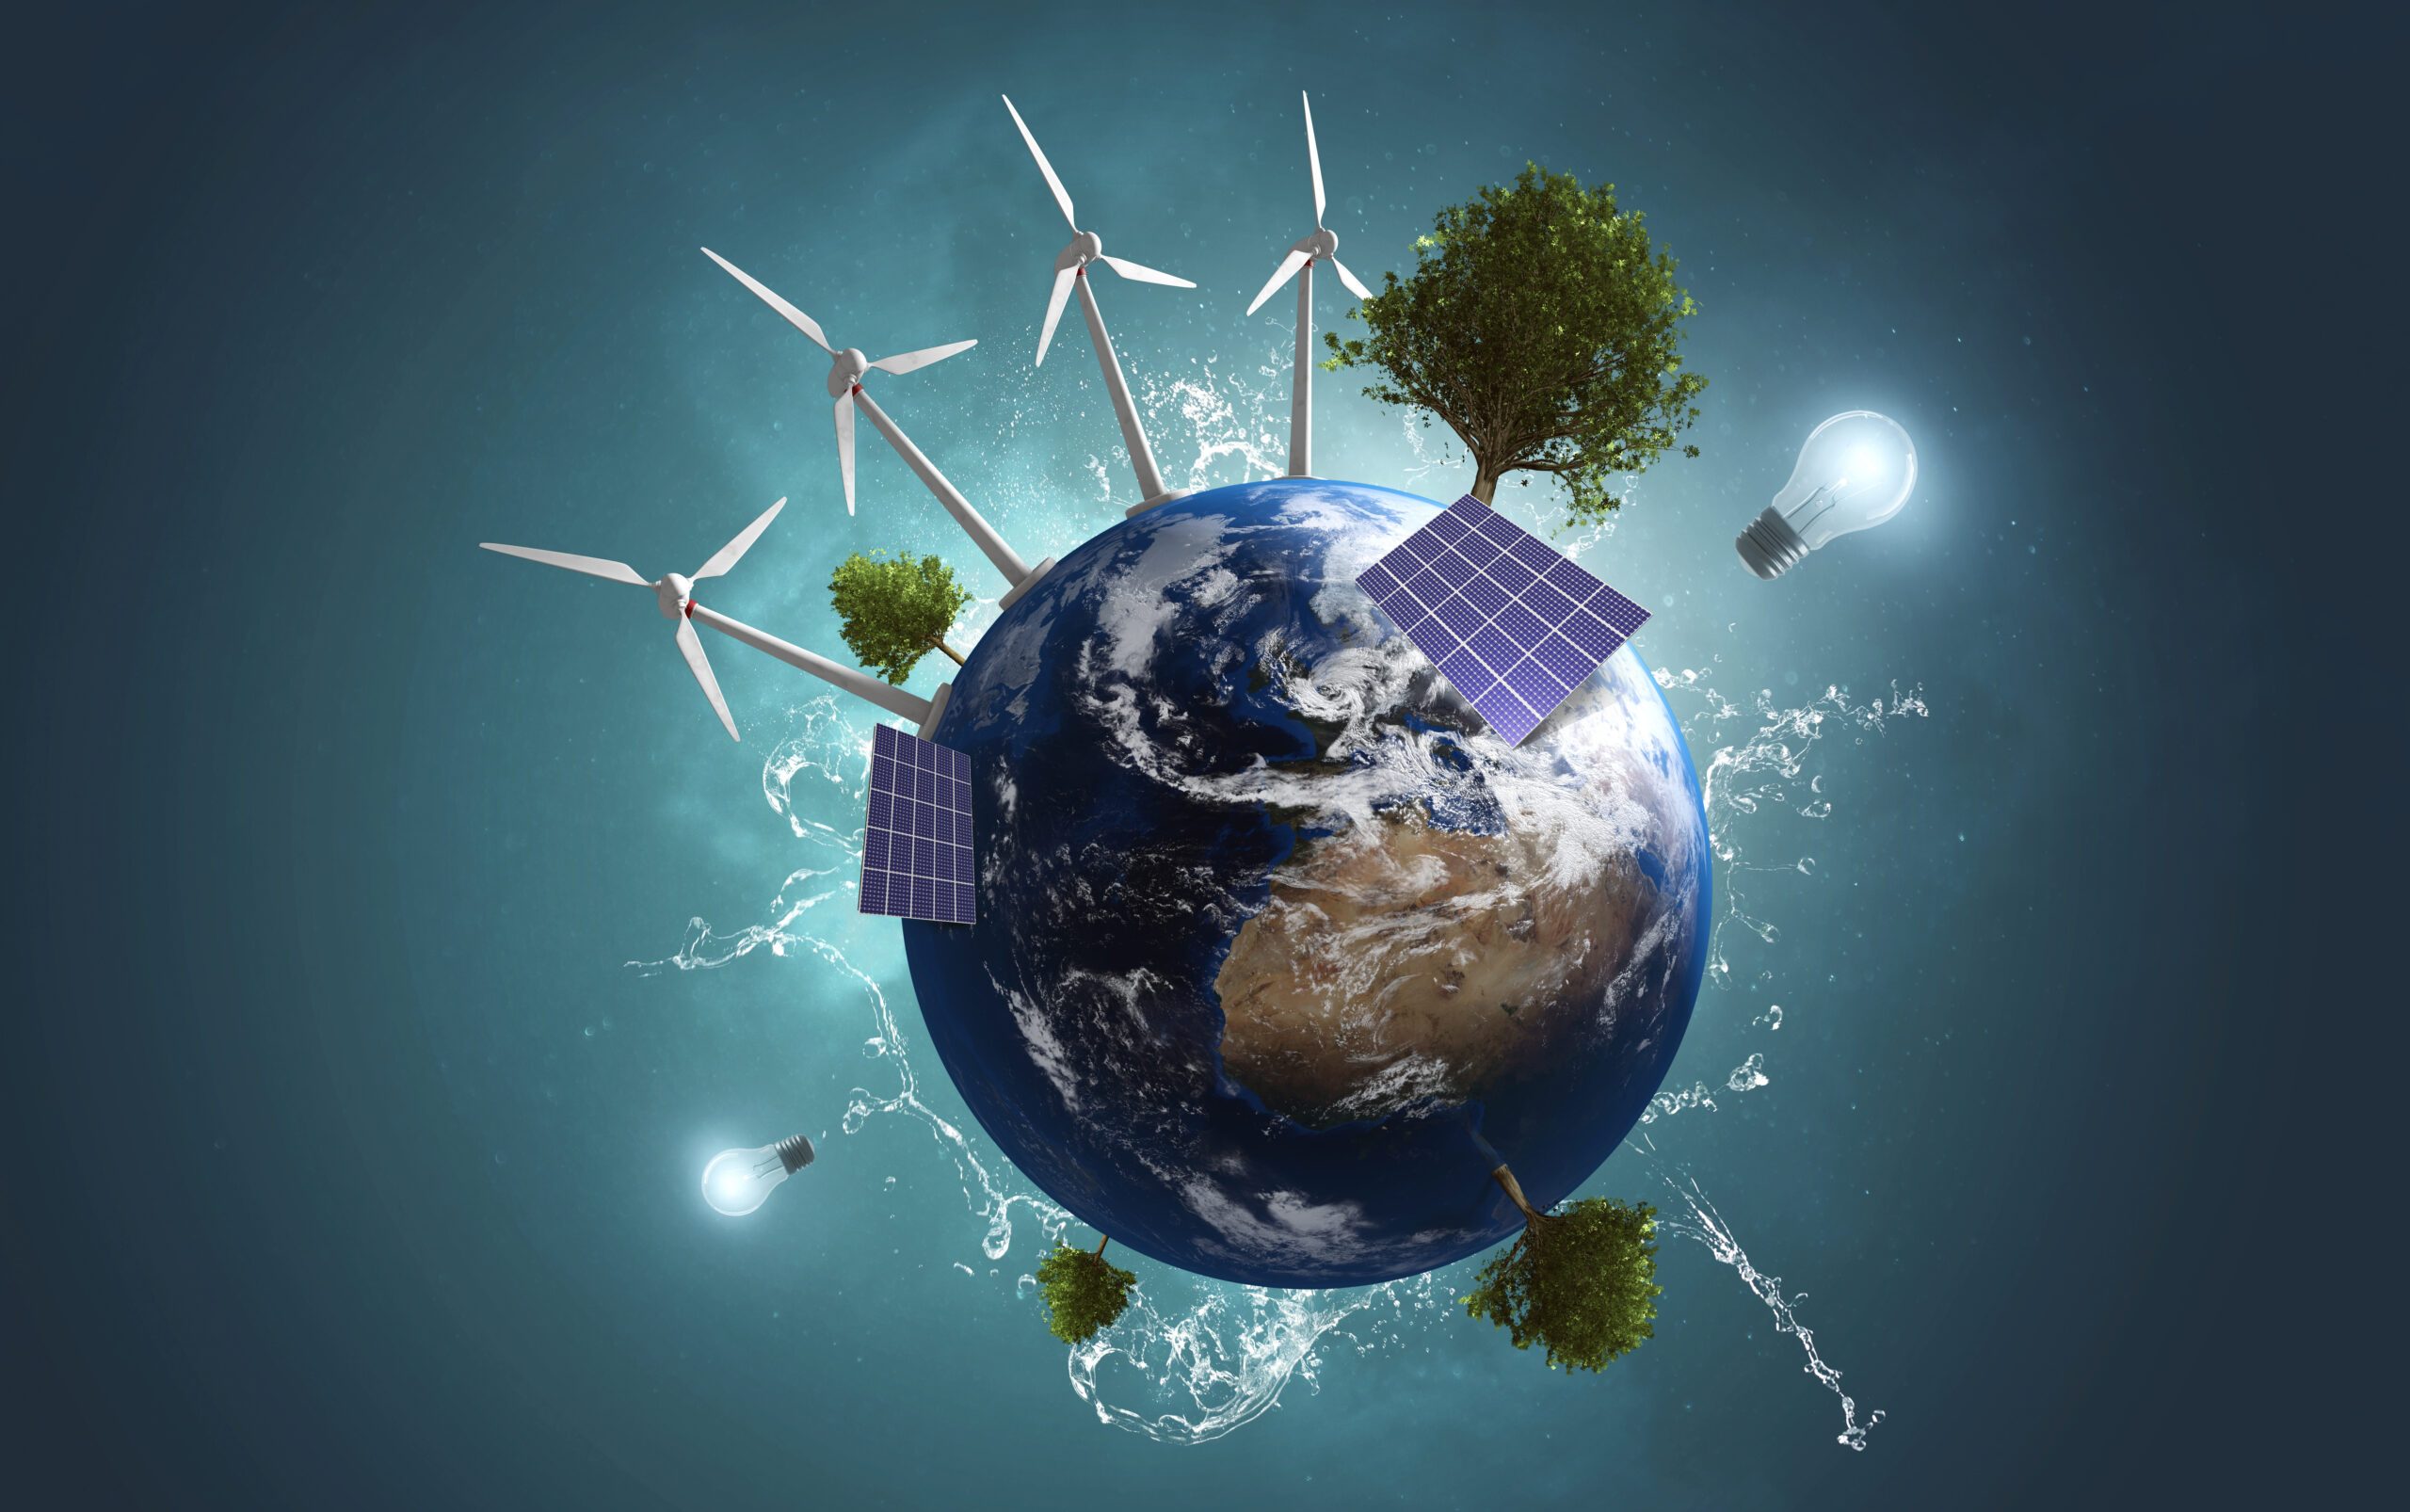 TOBB Başkanı Hisarcıklıoğlu: “Karbon salımını azaltmalı, yenilenebilir enerji kaynaklarını daha çok tercih etmeliyiz”